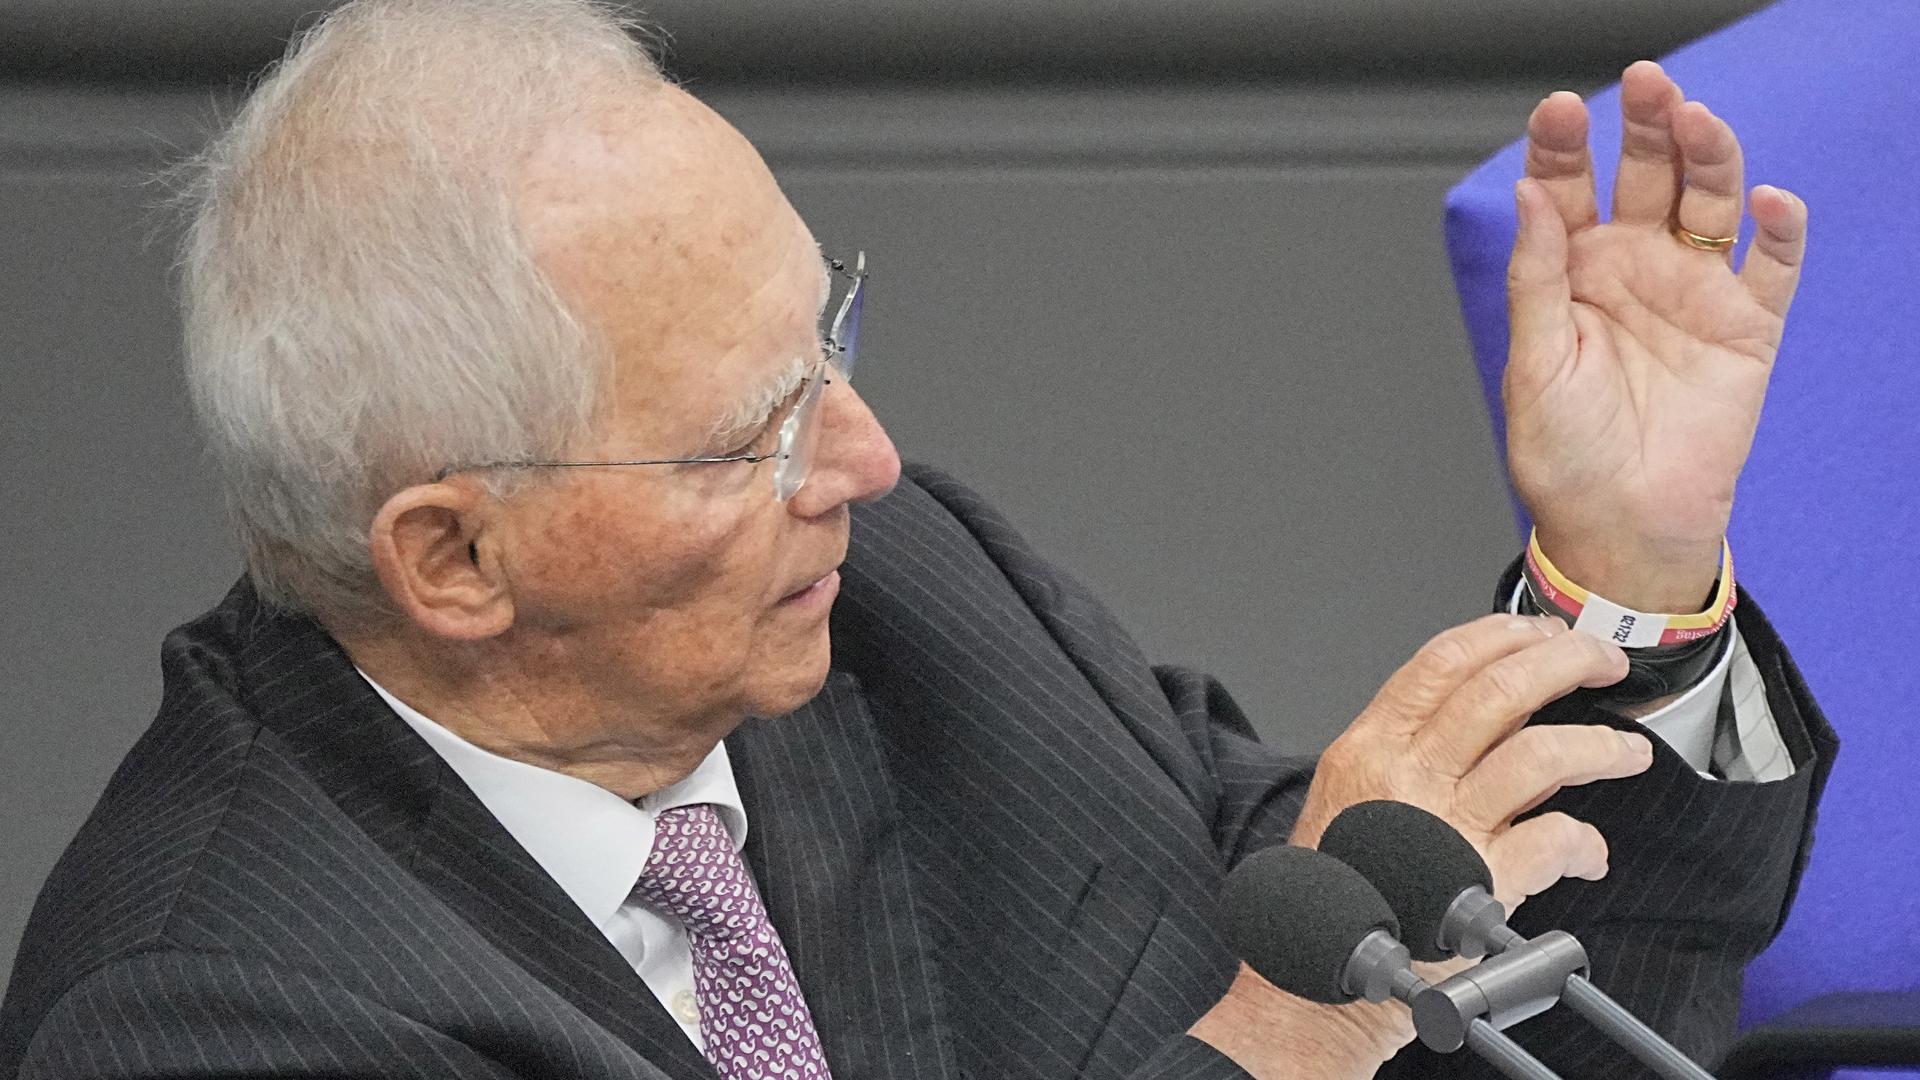 Alterspräsident Wolfgang Schäuble (CDU) spricht bei der konstituierenden Sitzung des neuen Bundestags und trägt dabei das Schwarz-Rot-Goldene 3 G -Armband. +++ dpa-Bildfunk +++